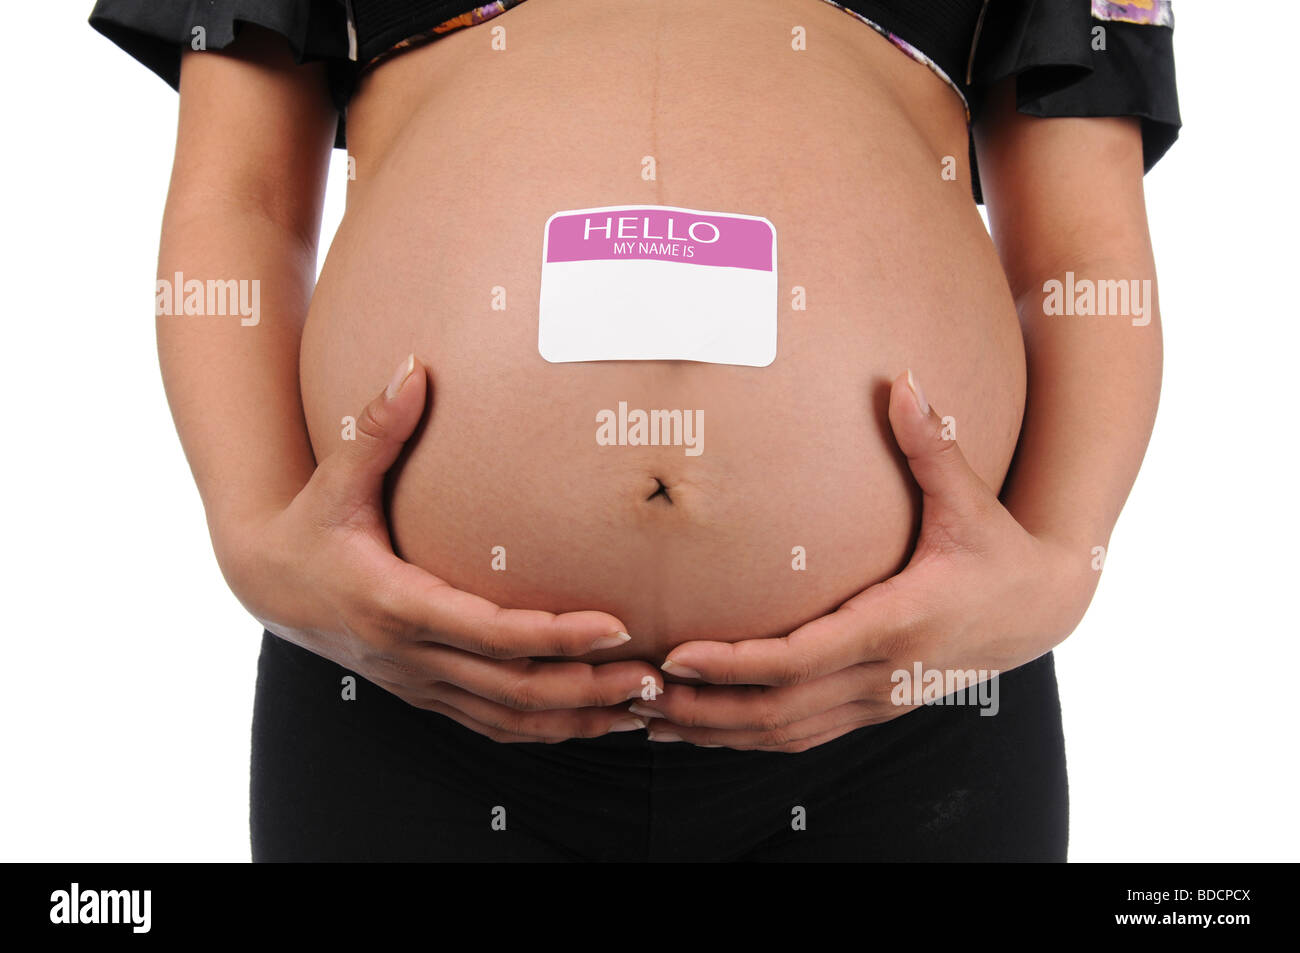 Schwangere Frau mit Bauch mit Namensschild Stockfoto